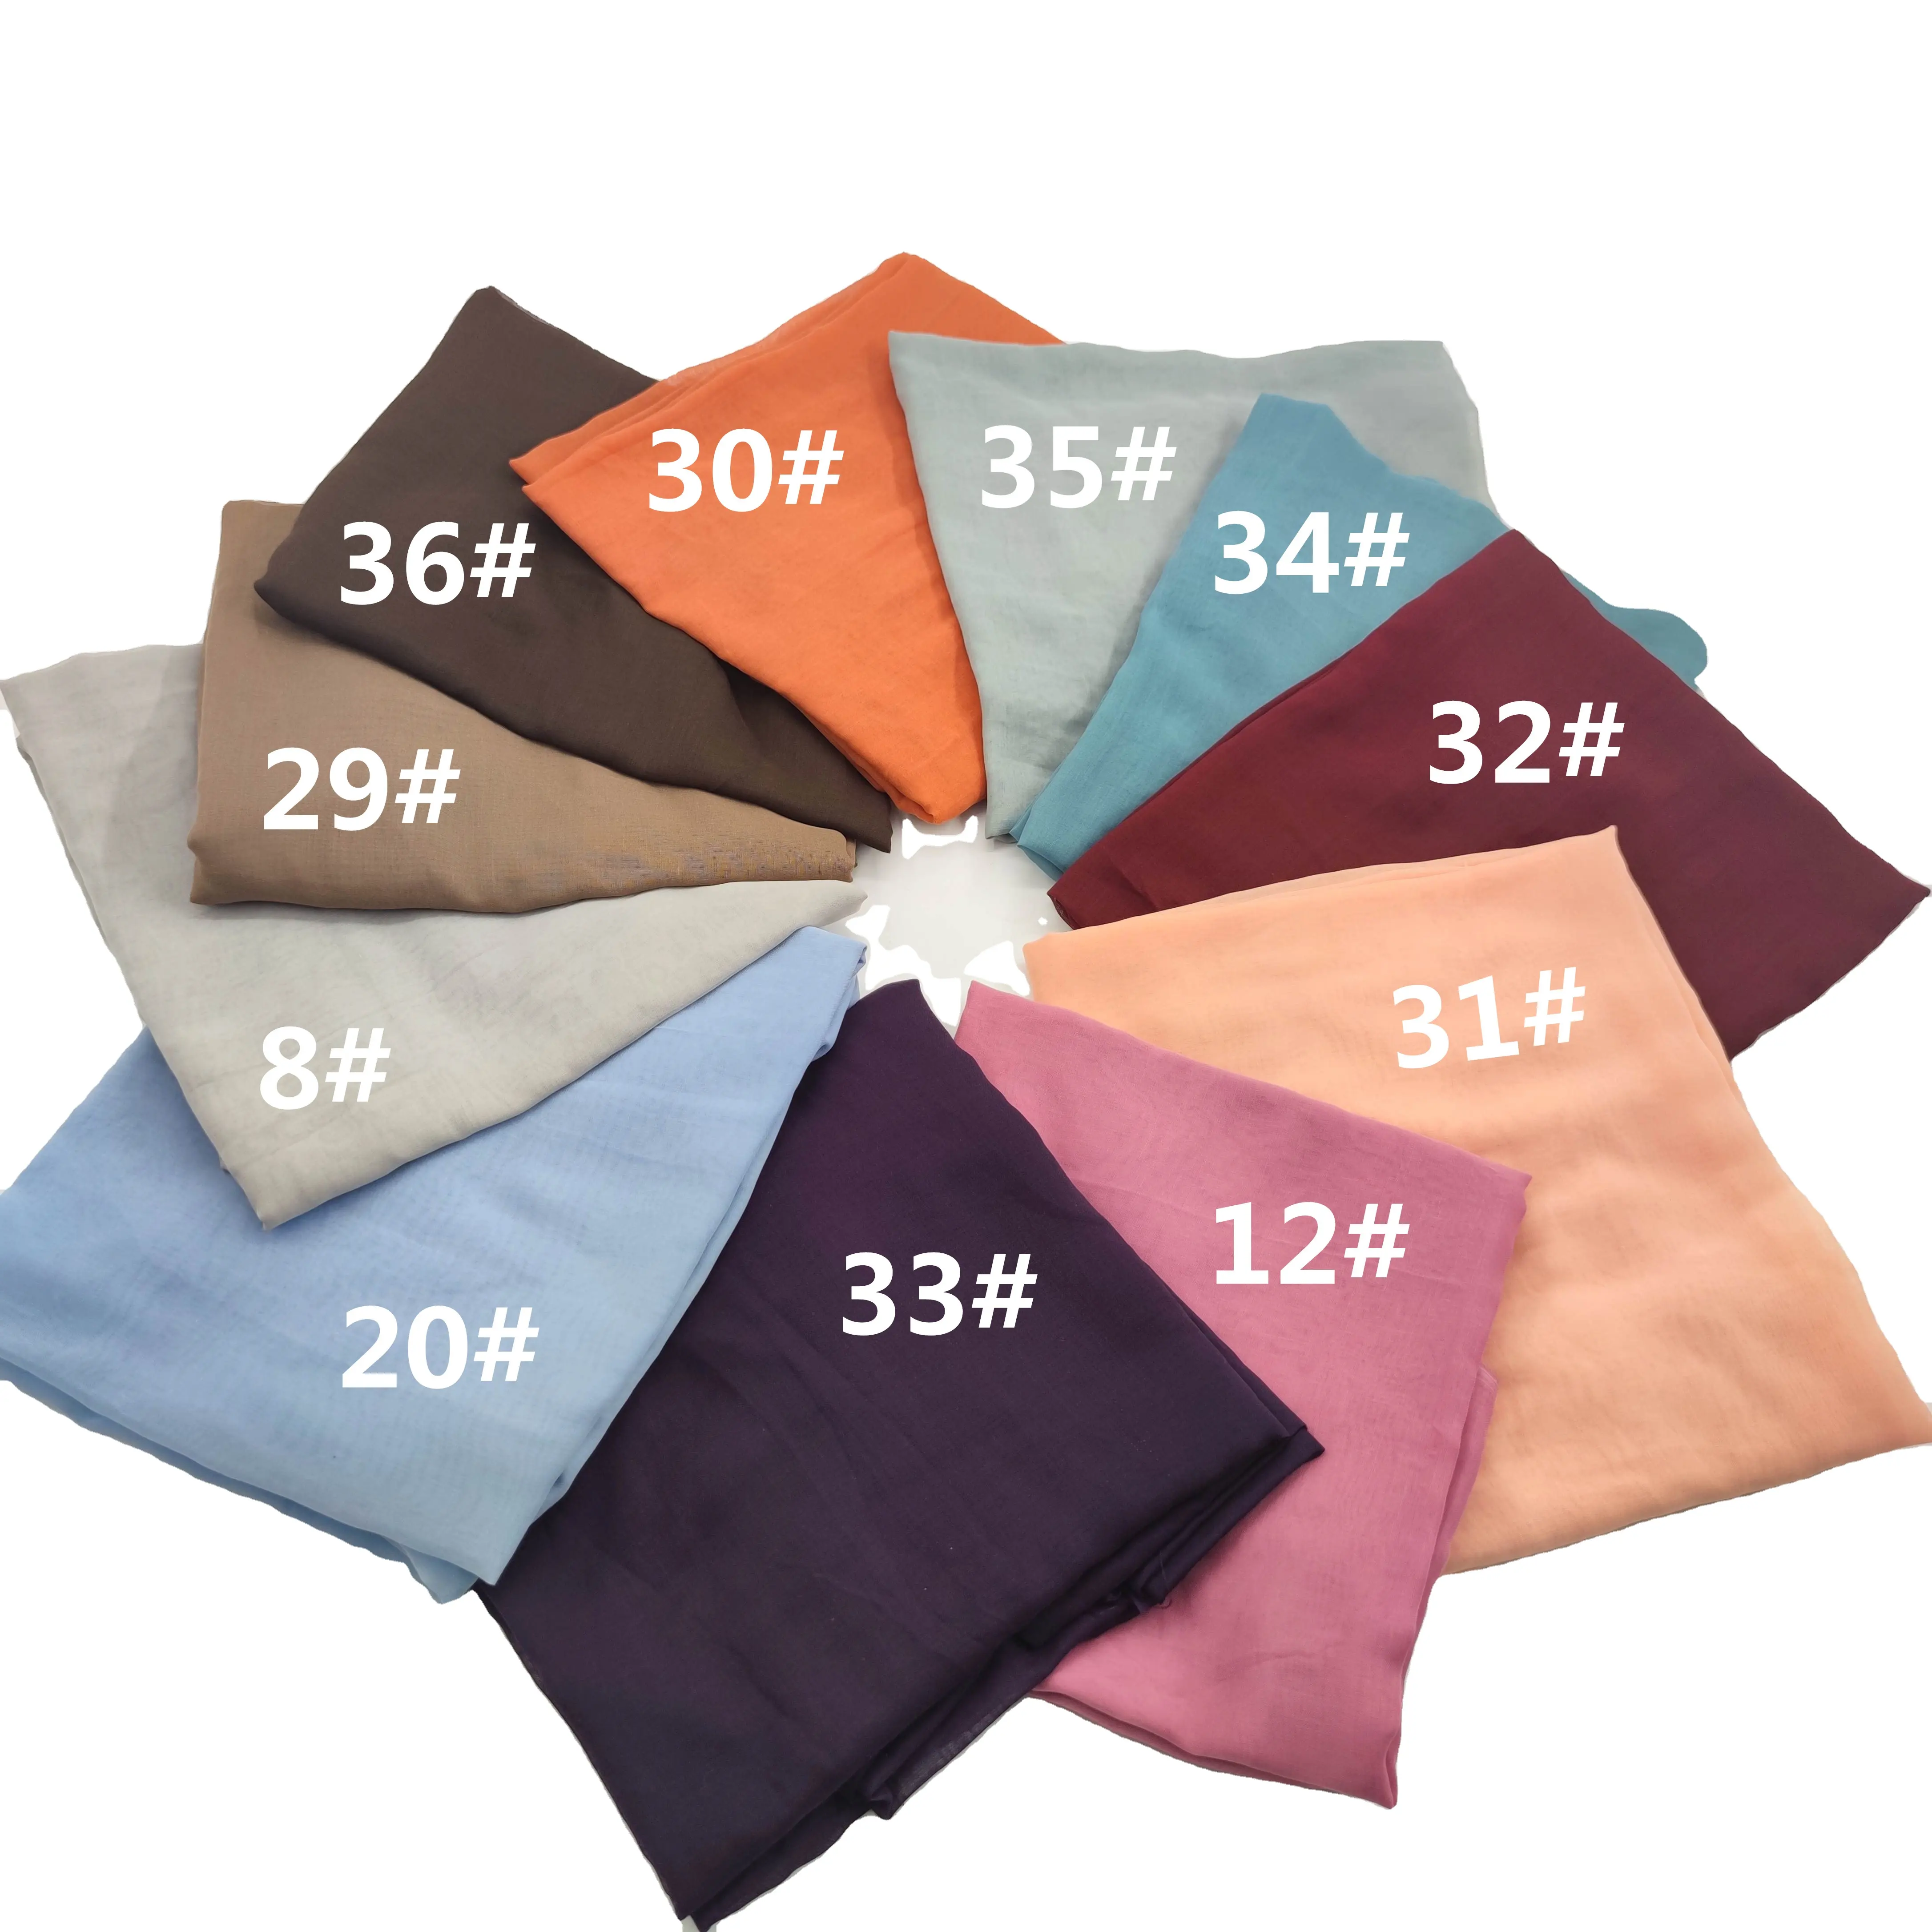 25 couleurs 60gsm taille personnalisée et étiquette voile de mousseline de soie voile de coton japonais foulards islamiques musulmans châle hijab